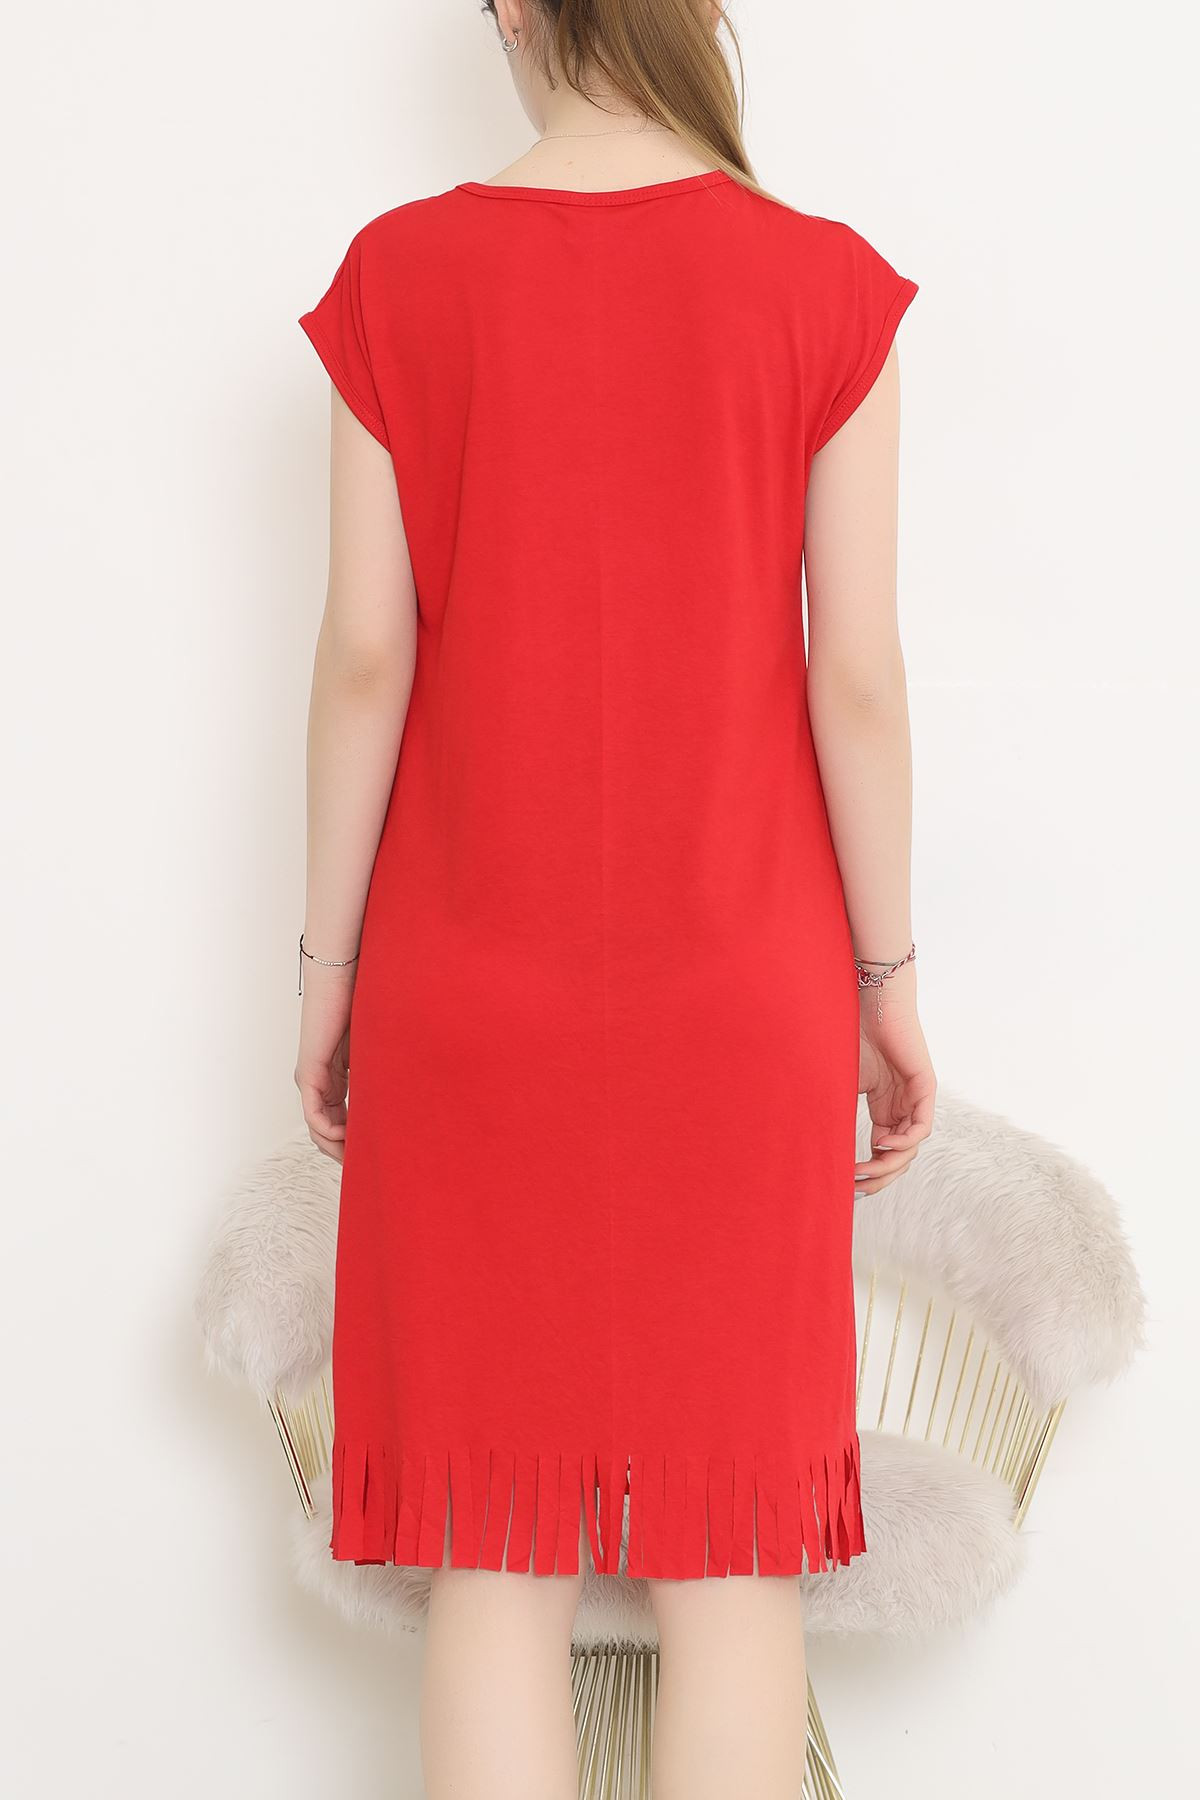 Püskül Detaylı Elbise Kırmızısiyah - 255.1287.